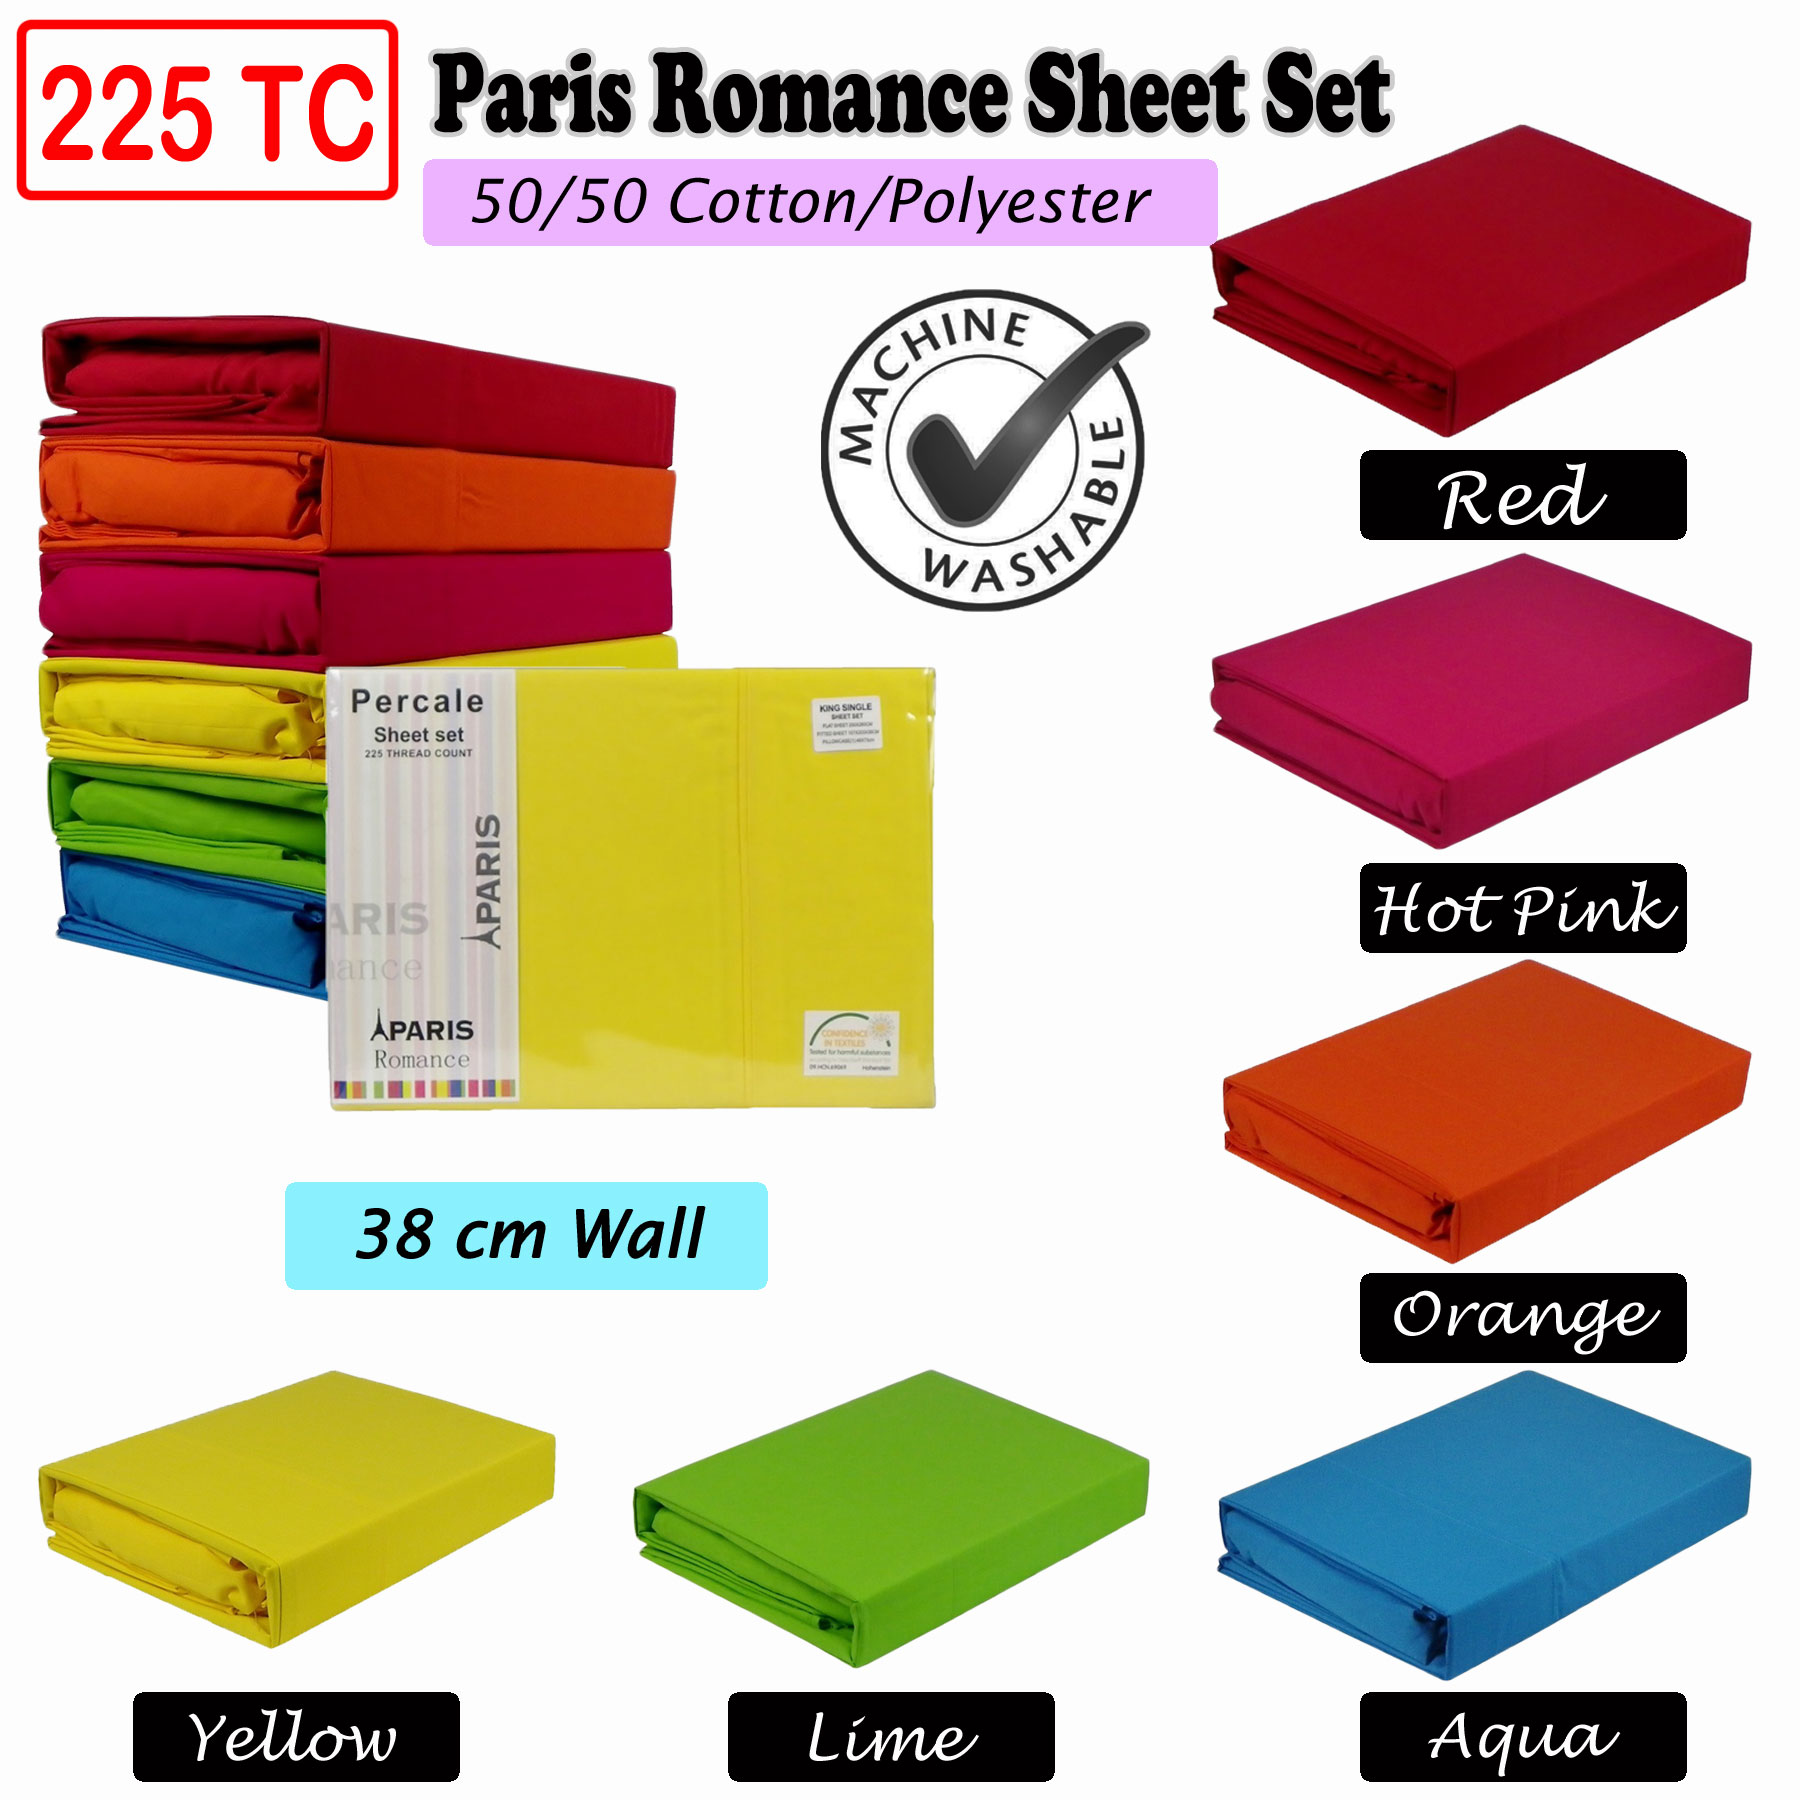 225TC Paris Romance Sheet Set